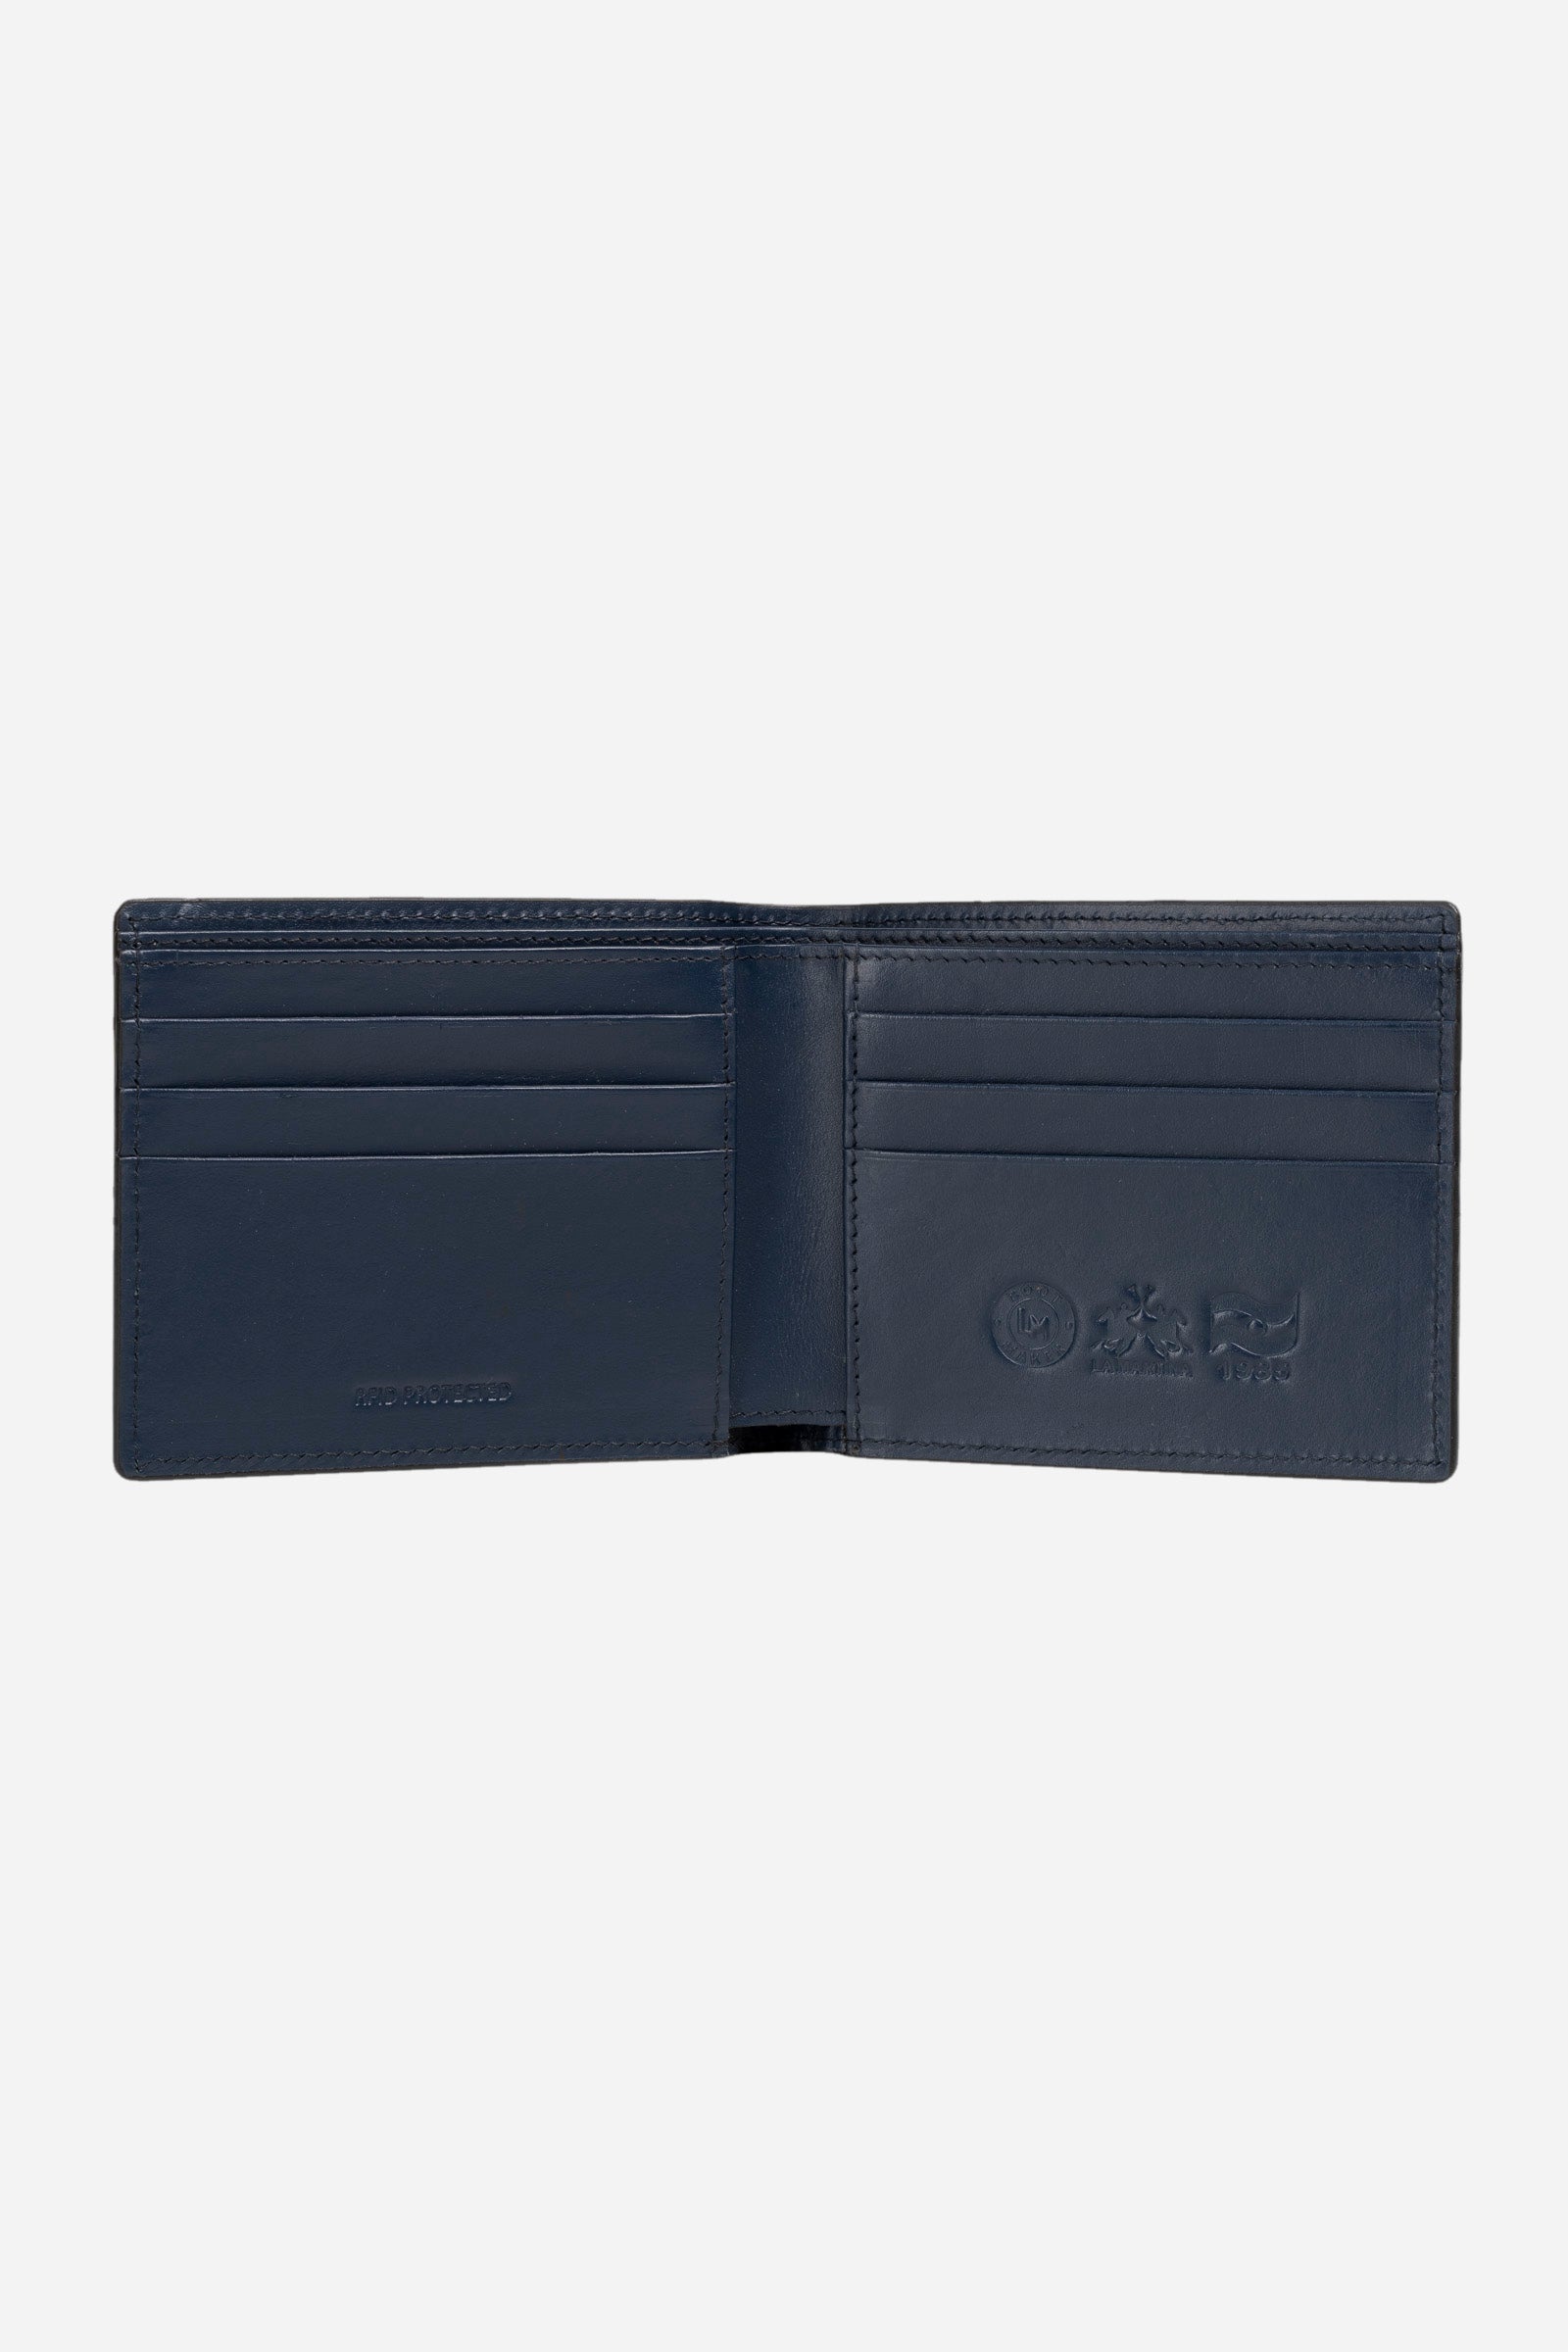 Men's leather wallet - Pablo